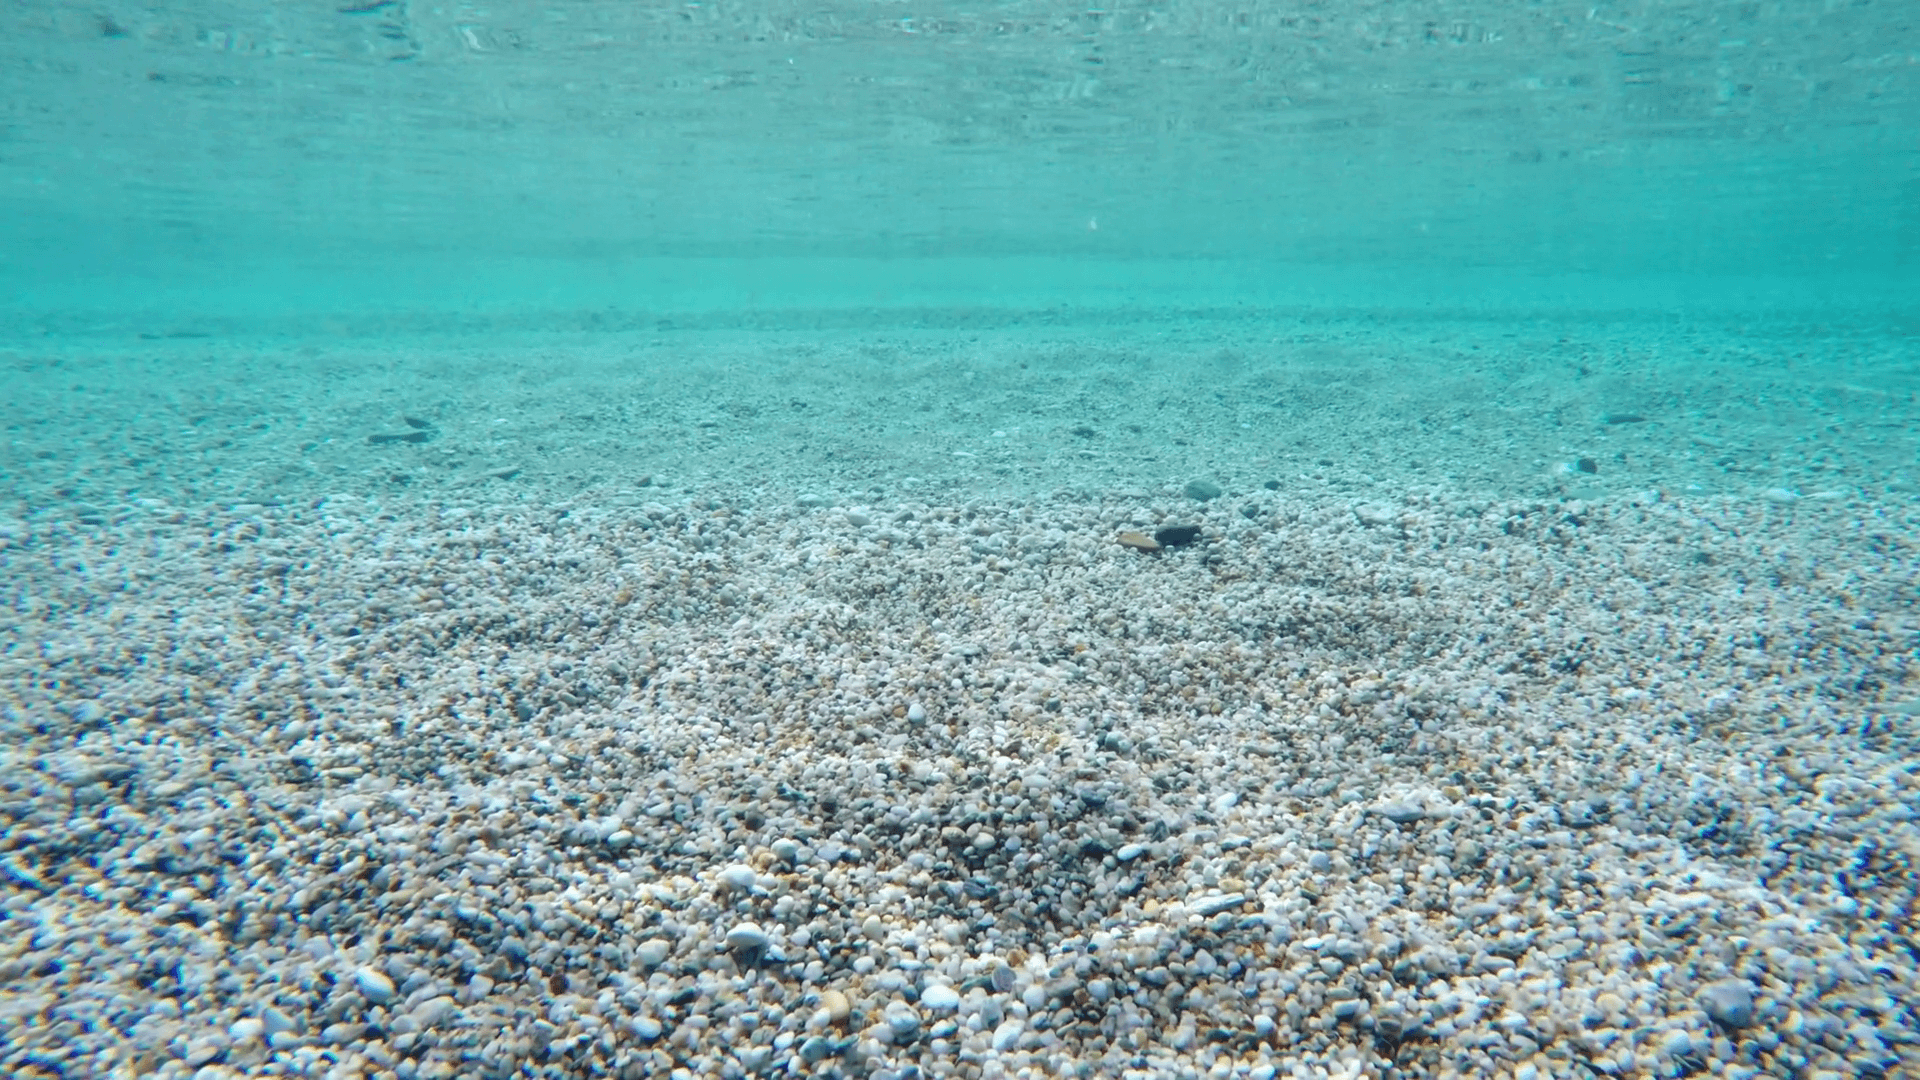 Buceo hermoso claro bajo el agua guijarros mar turquesa agua verano relajante papel tapiz de reflexión reflejo Almacen de metraje de vídeo - Storyblocks Video